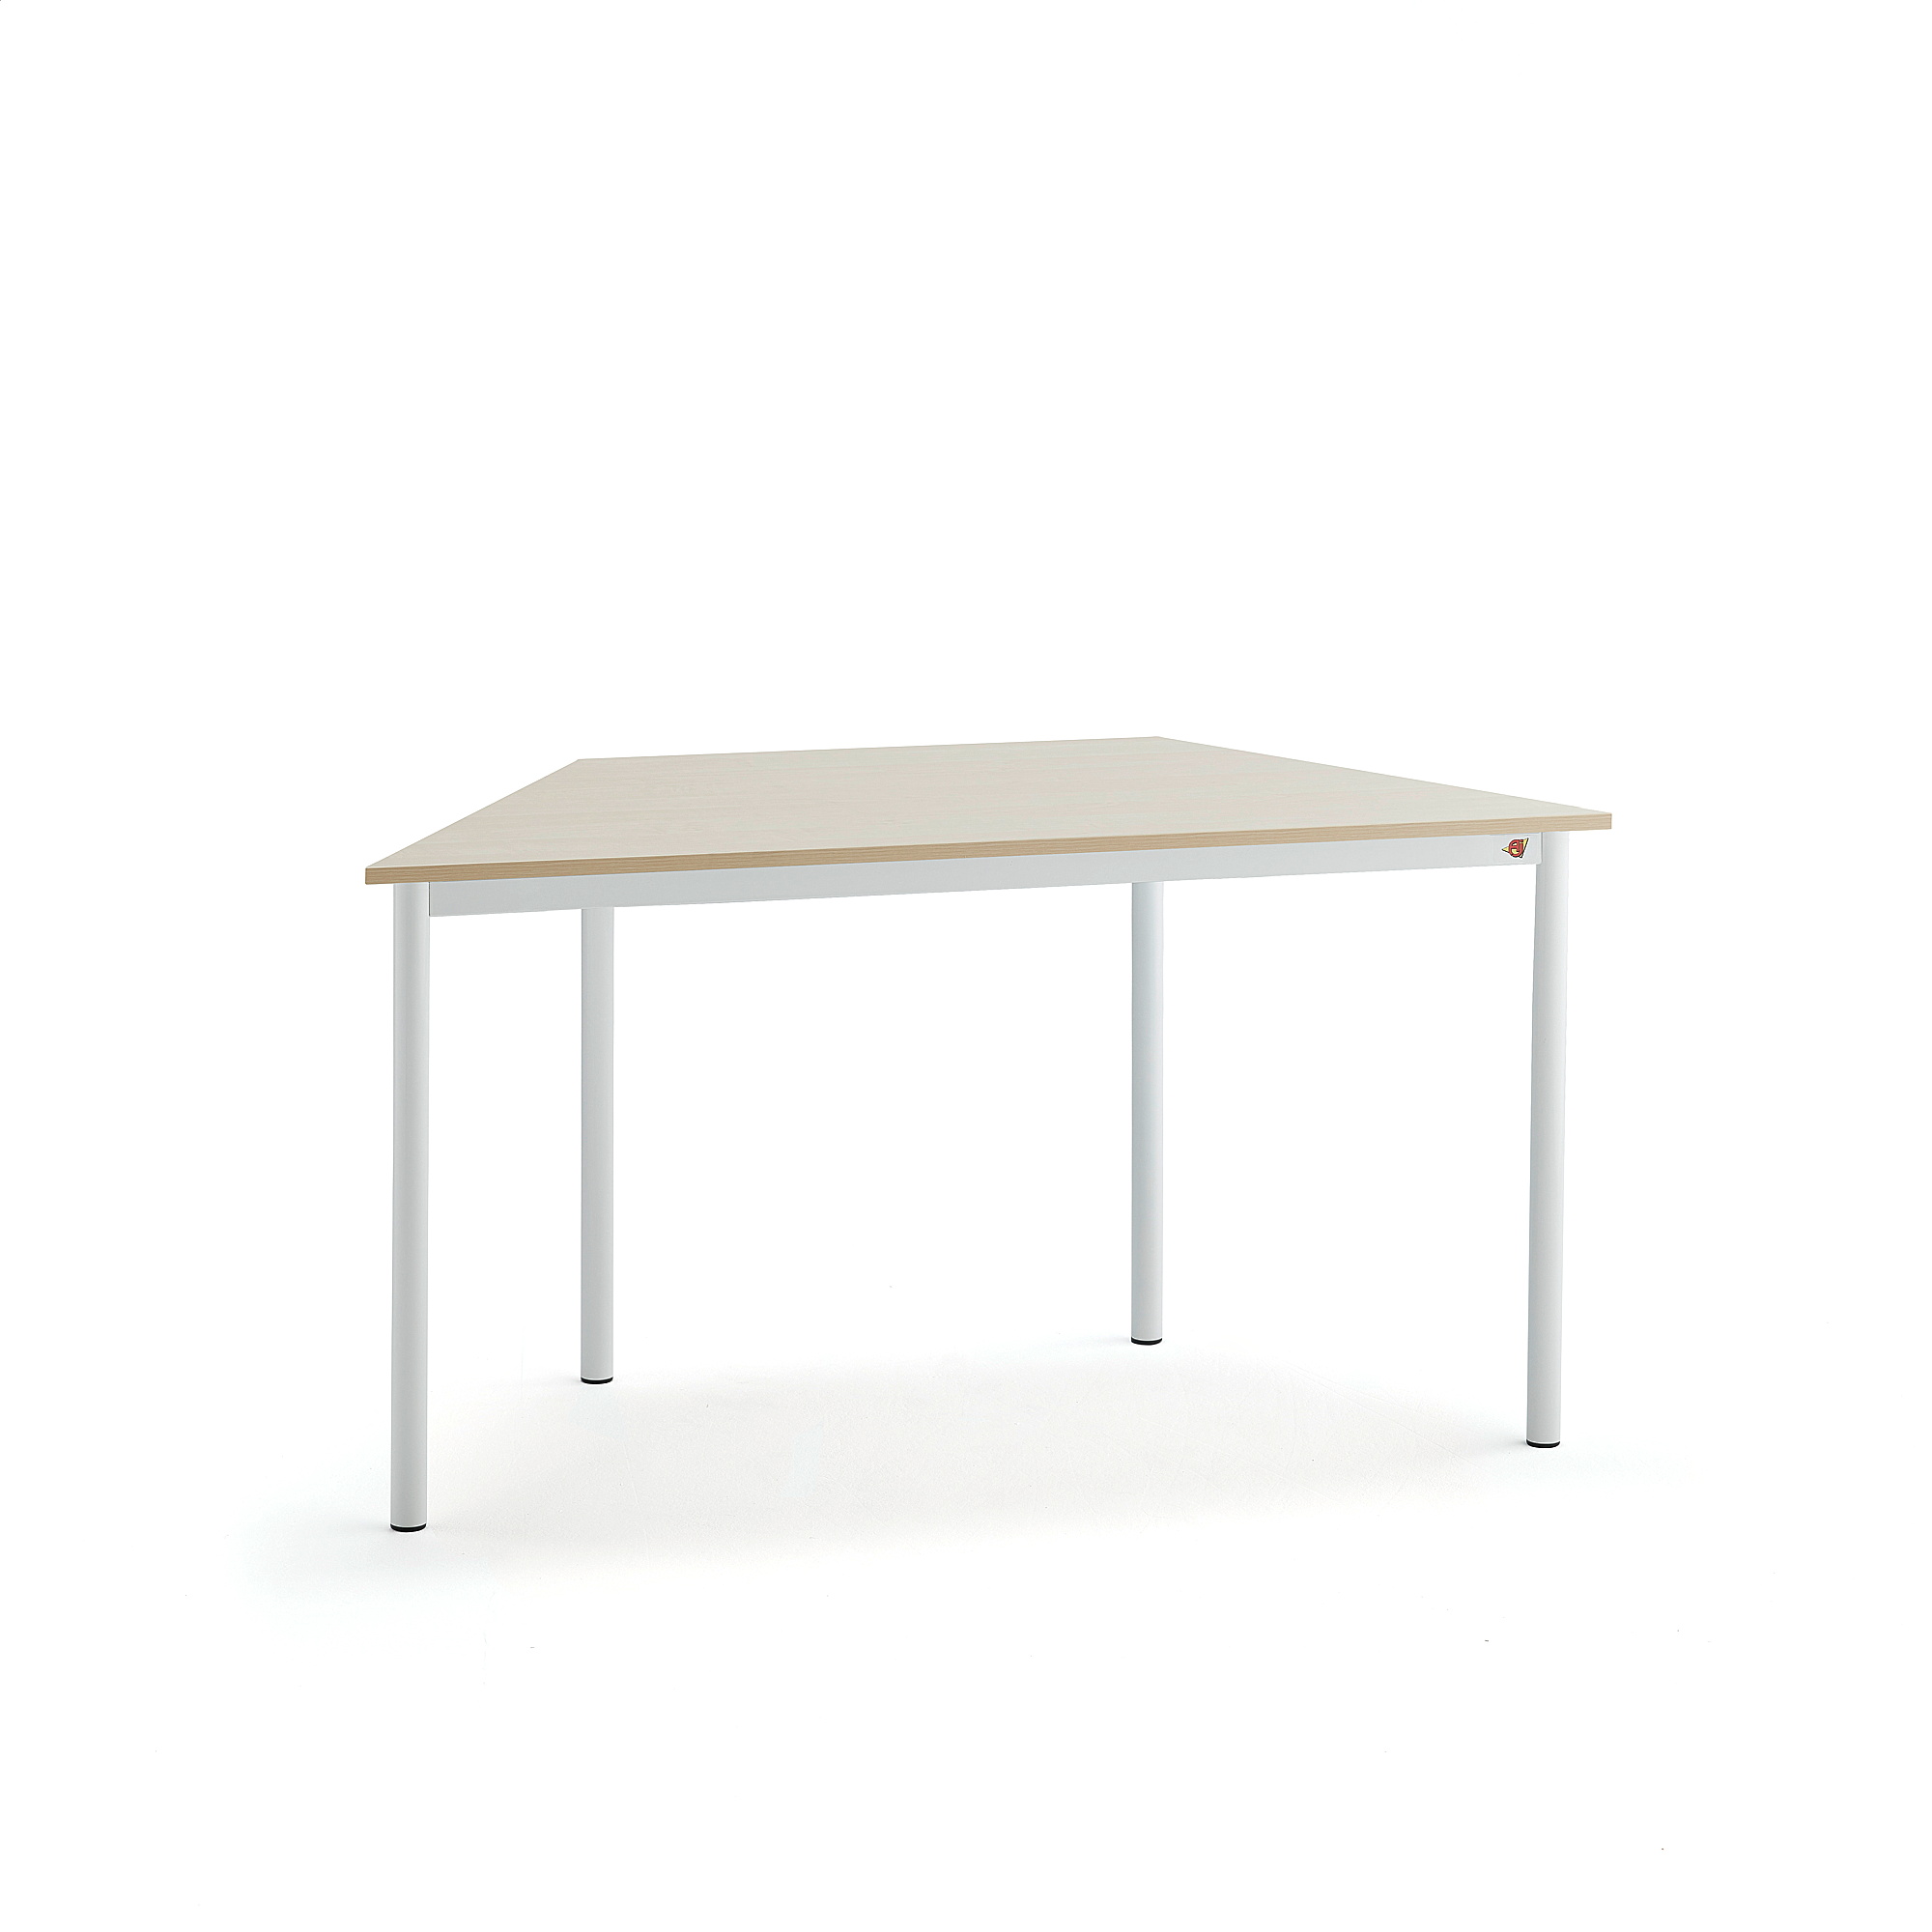 Stůl BORÅS TRAPETS, 1200x600x720 mm, bílé nohy, HPL deska, bříza